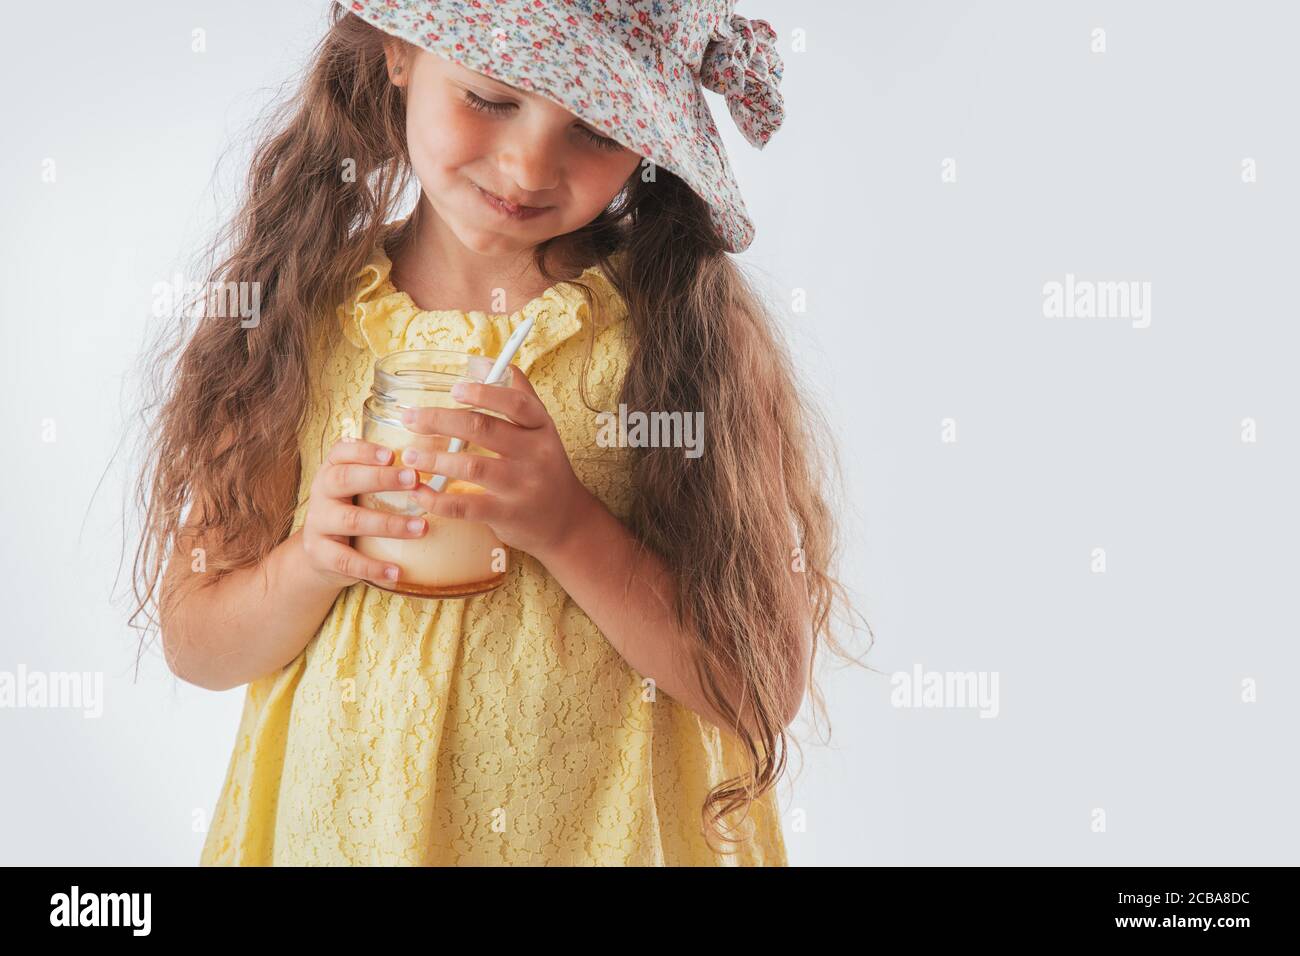 Schöne kleine Mädchen mit Löffel im Mund essen leckere Sahne. Lecker Eis zu essen macht Spaß Stockfoto